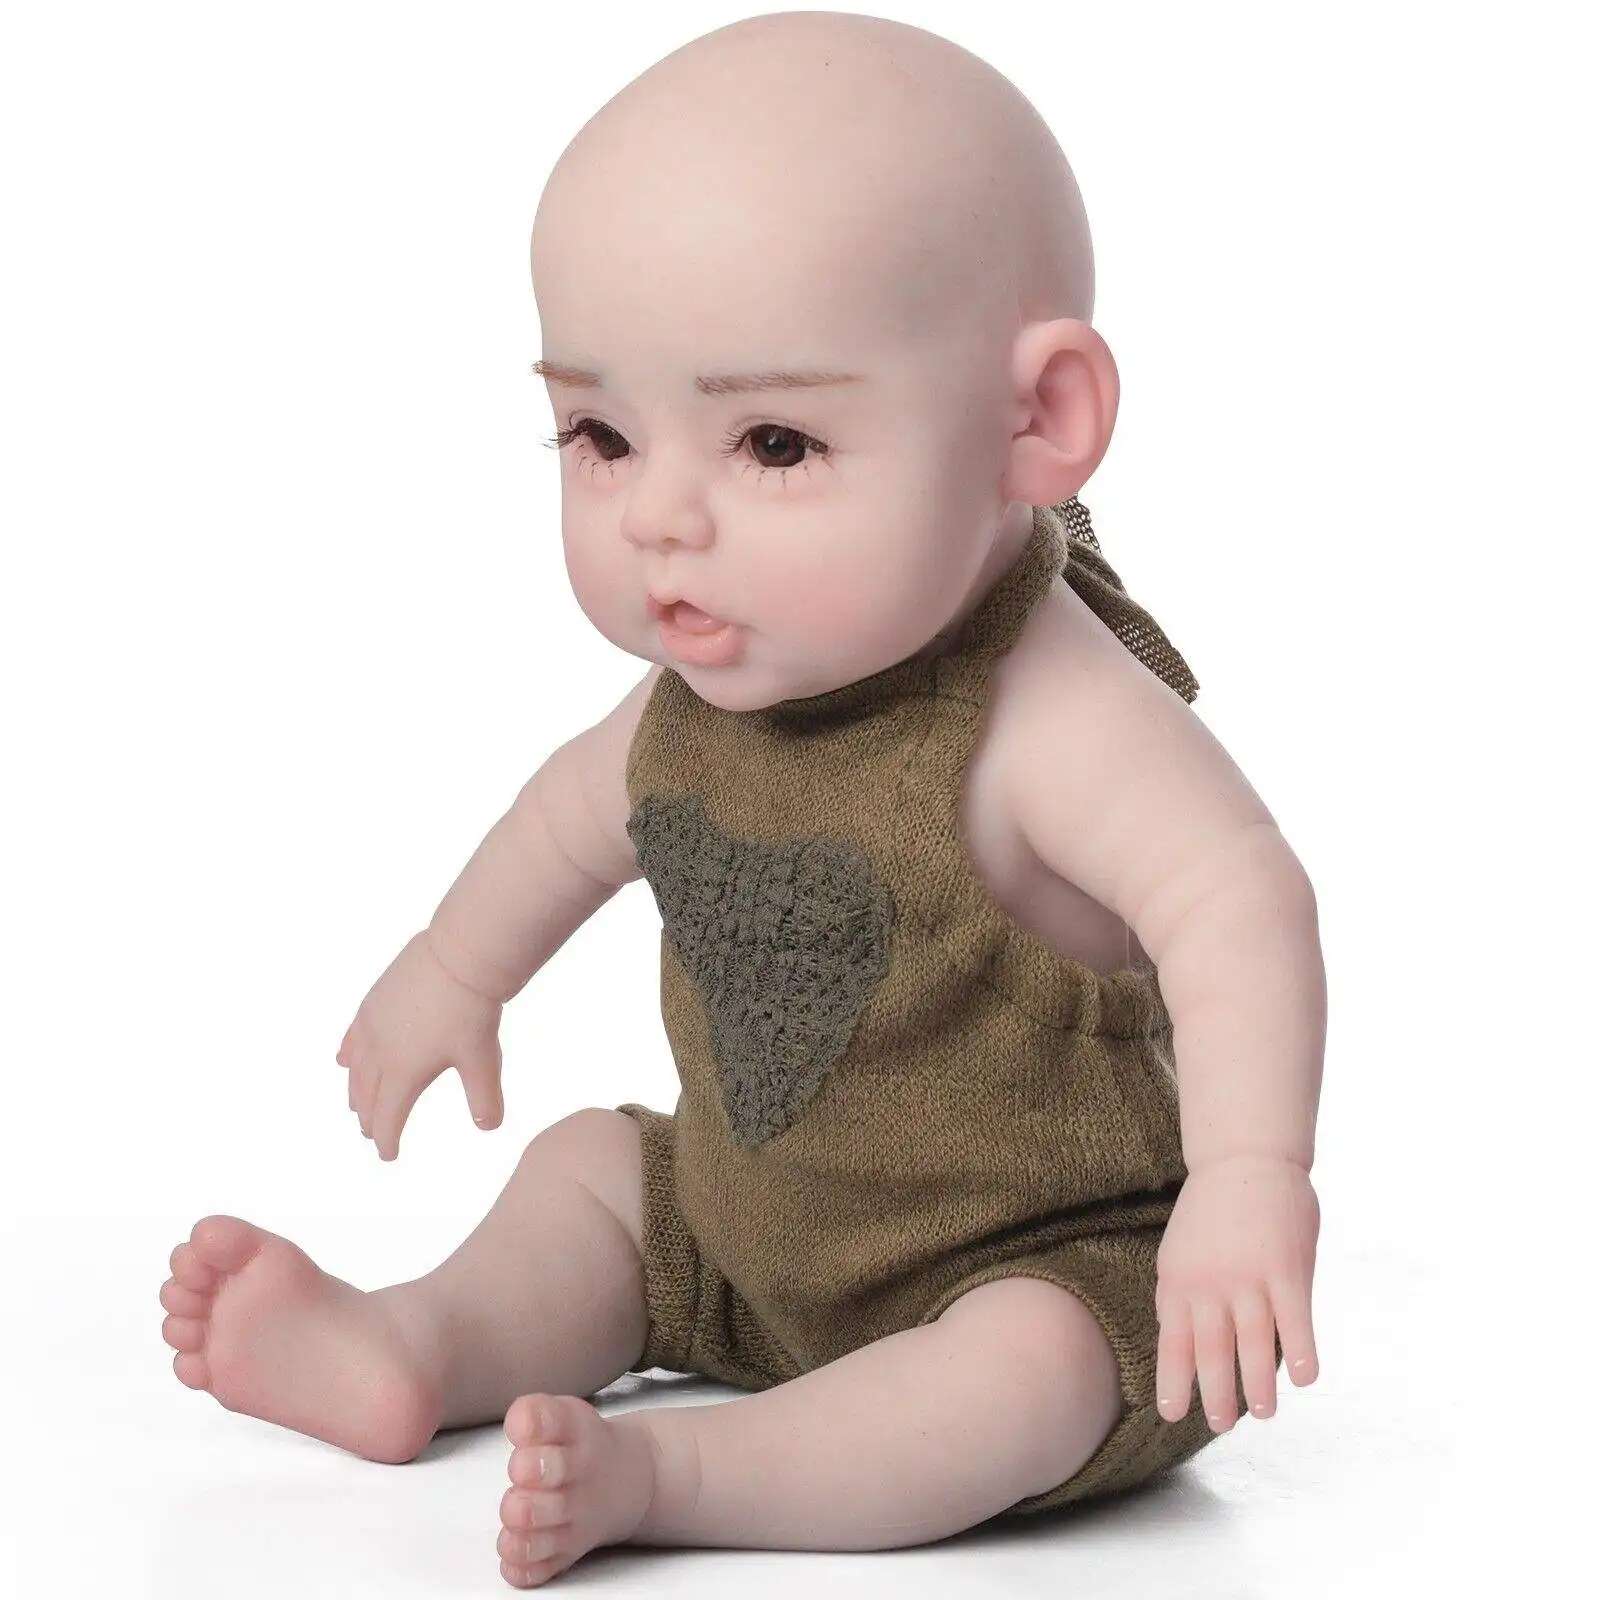 Hareketli bacaklarda Renborn erkek bebek ile 17.7 "silikon bebek bebek platin tam silikon bebek bebek yeniden doğmuş toplayıcı için